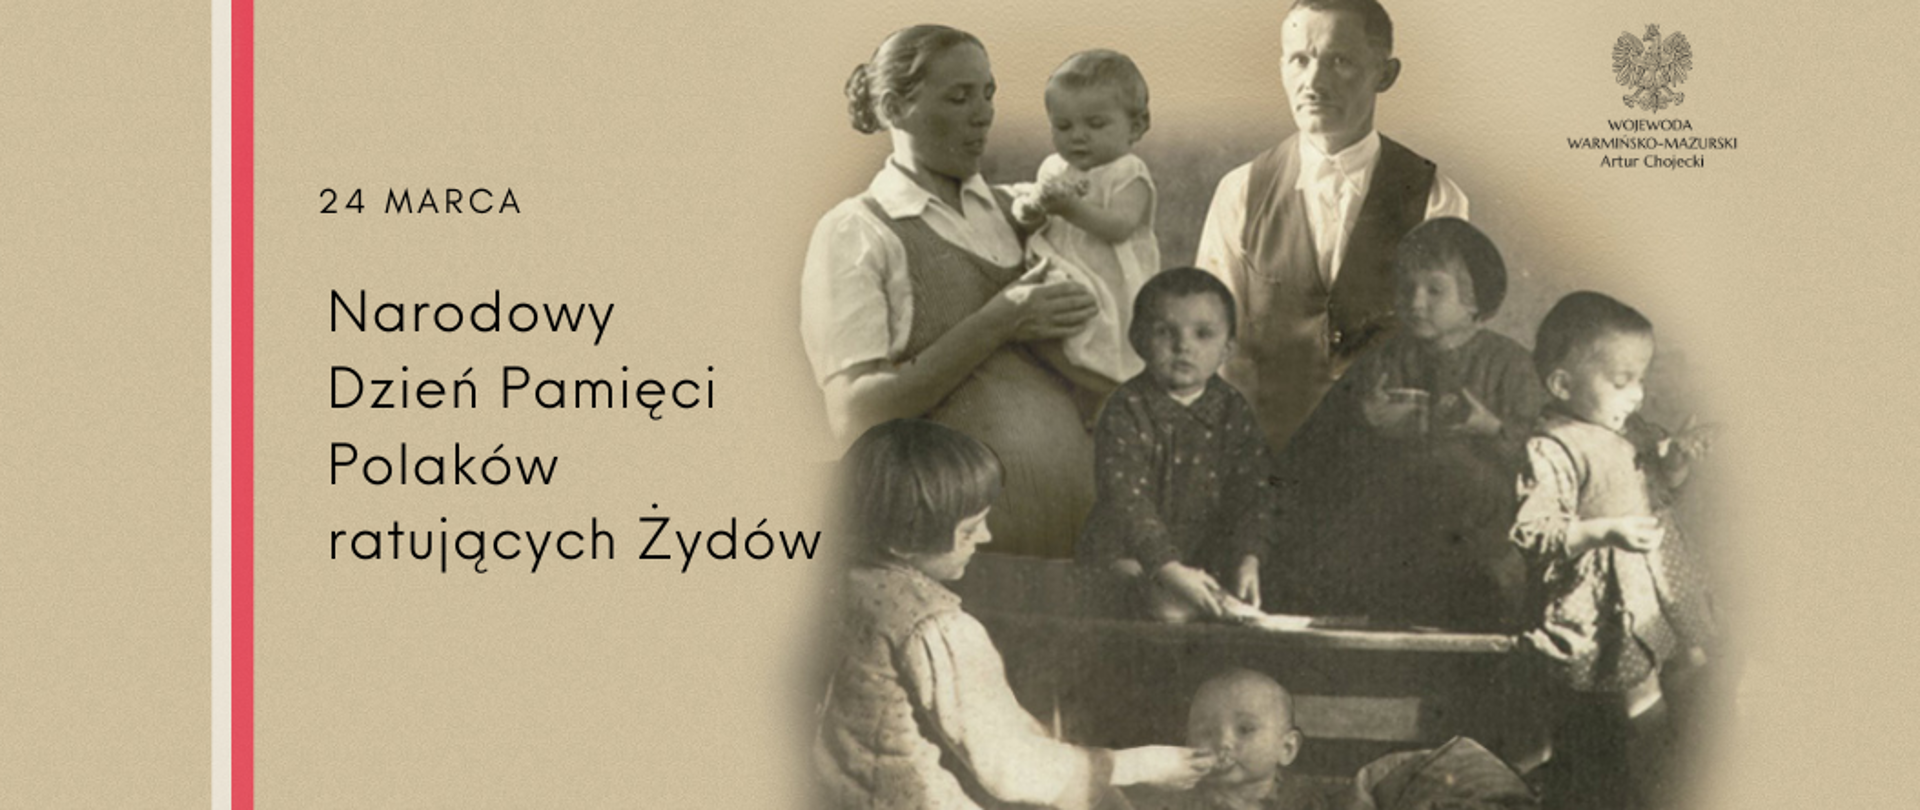 24 marca – Narodowy Dzień Pamięci Polaków ratujących Żydów pod okupacją niemiecką